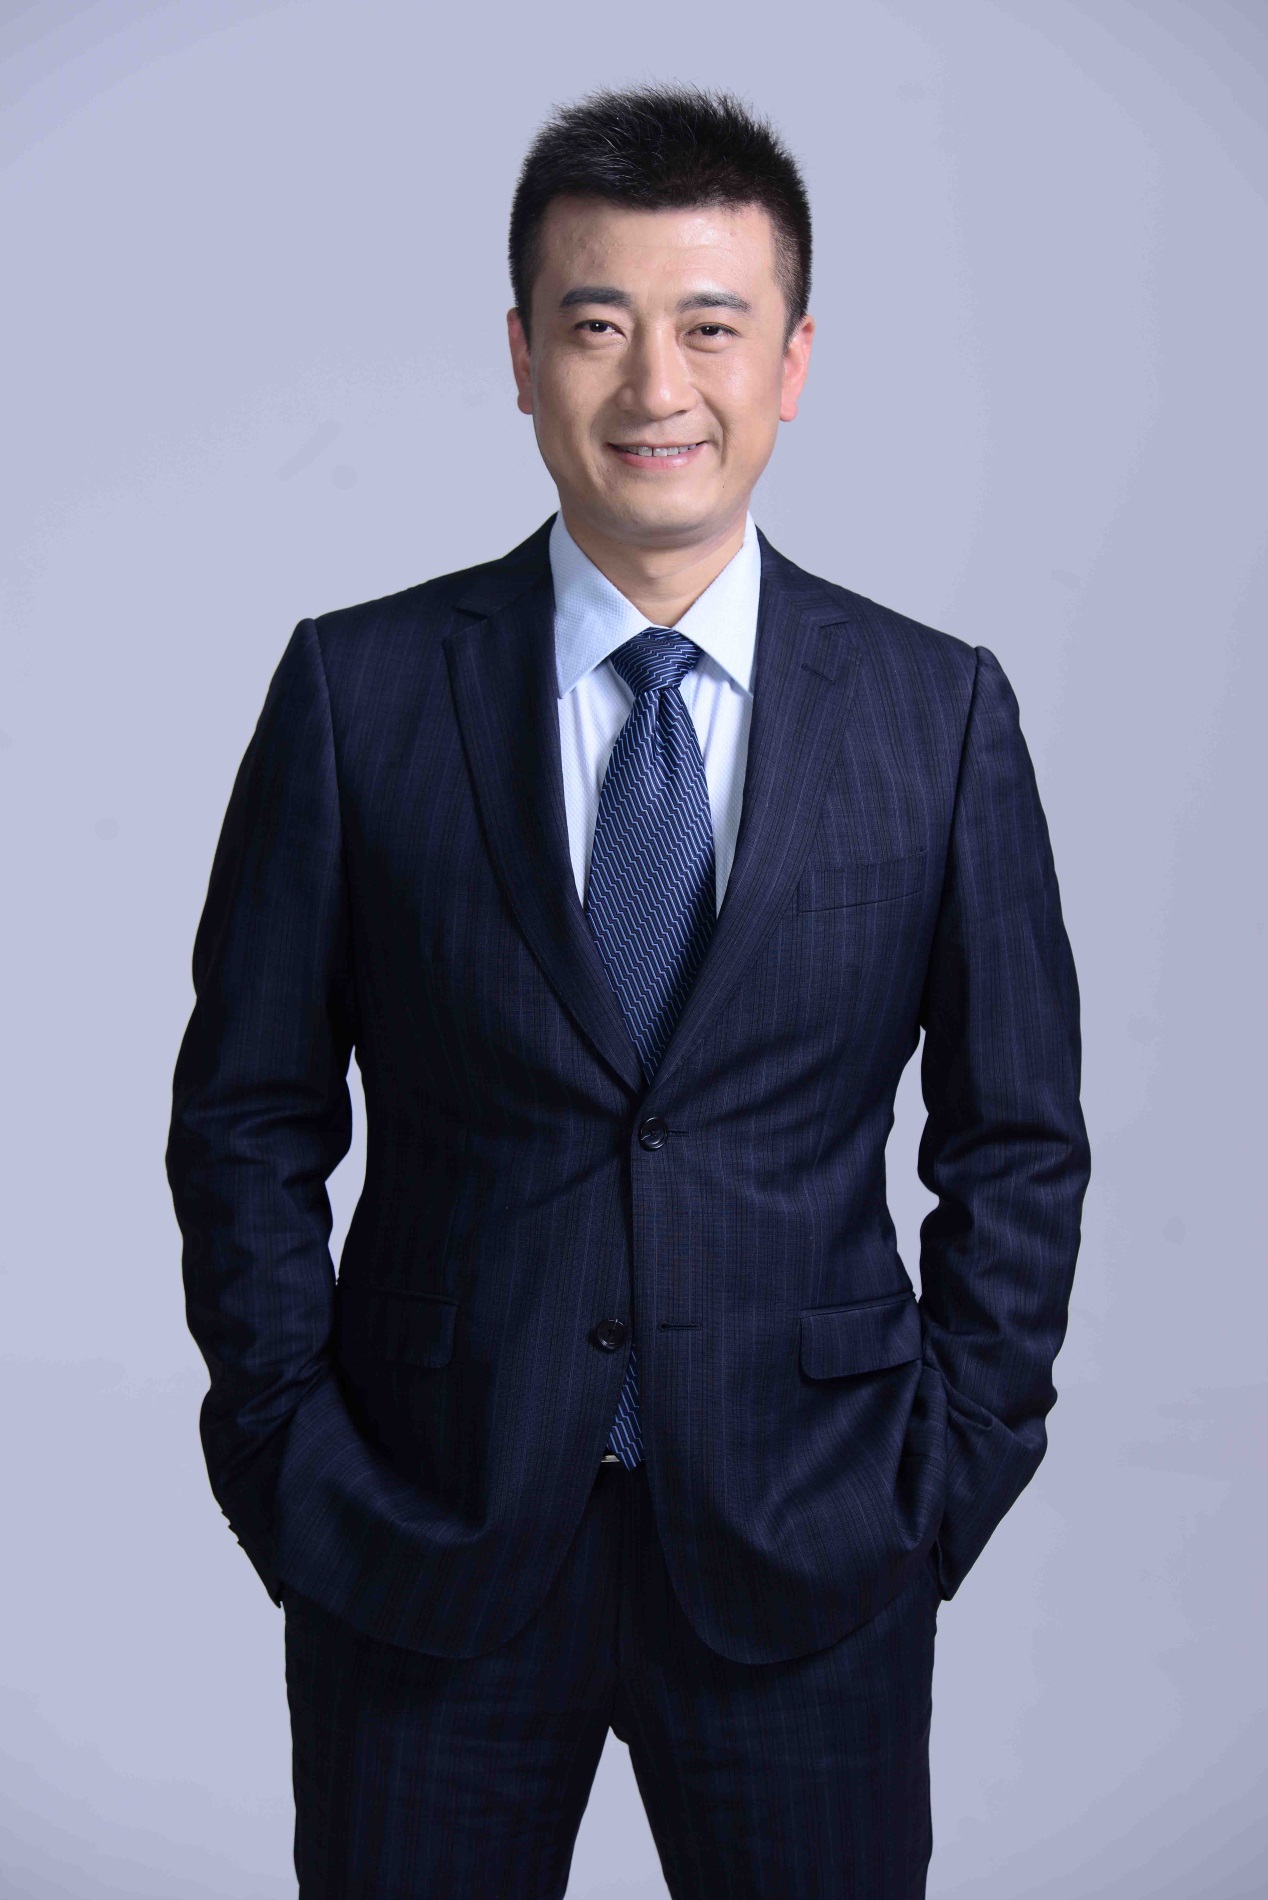 趙國棟(北京通力互聯技術服務有限公司CEO)